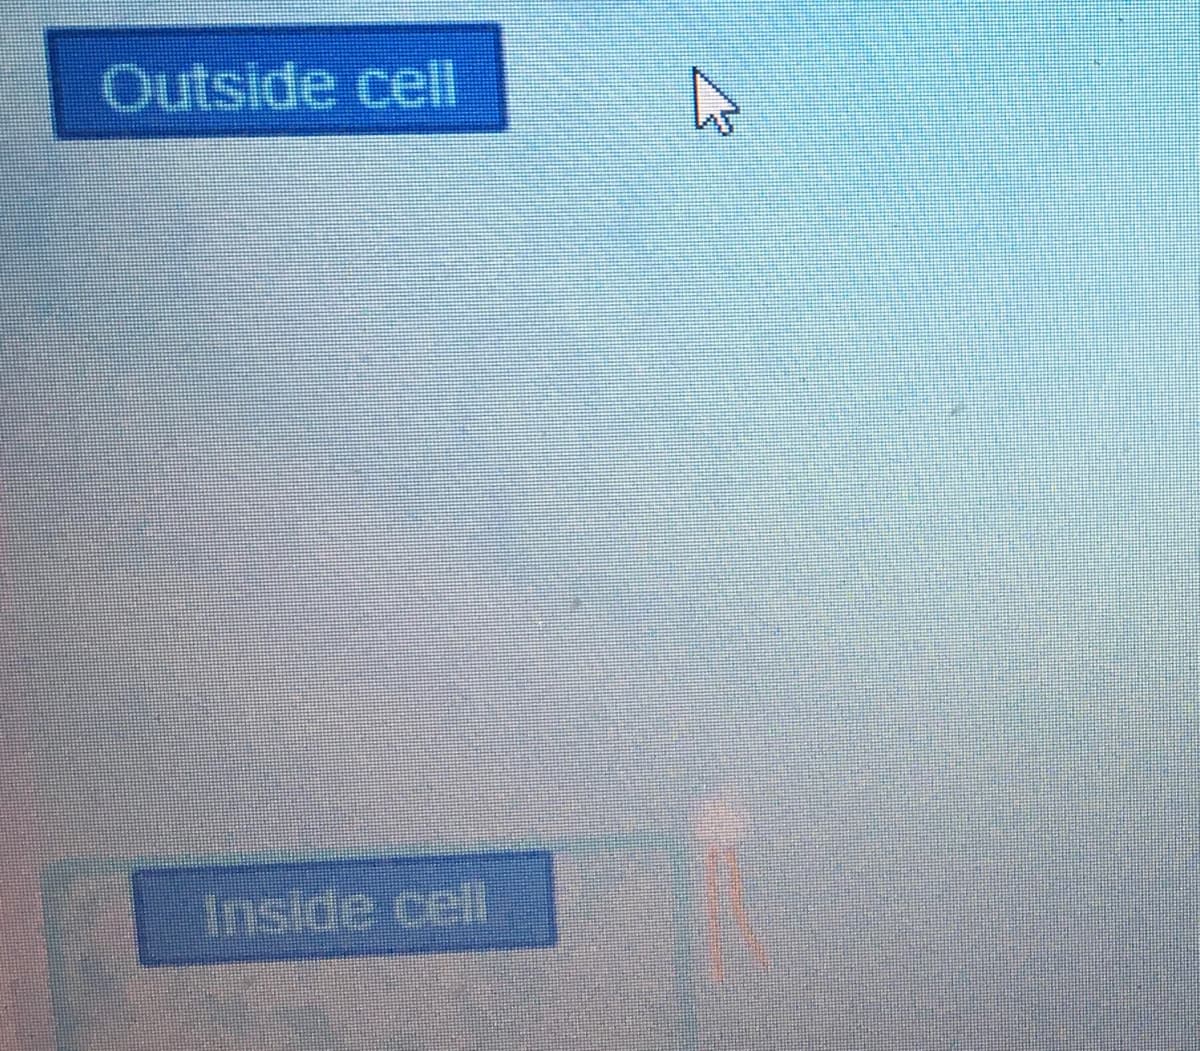 Outside cell
Inside cell
